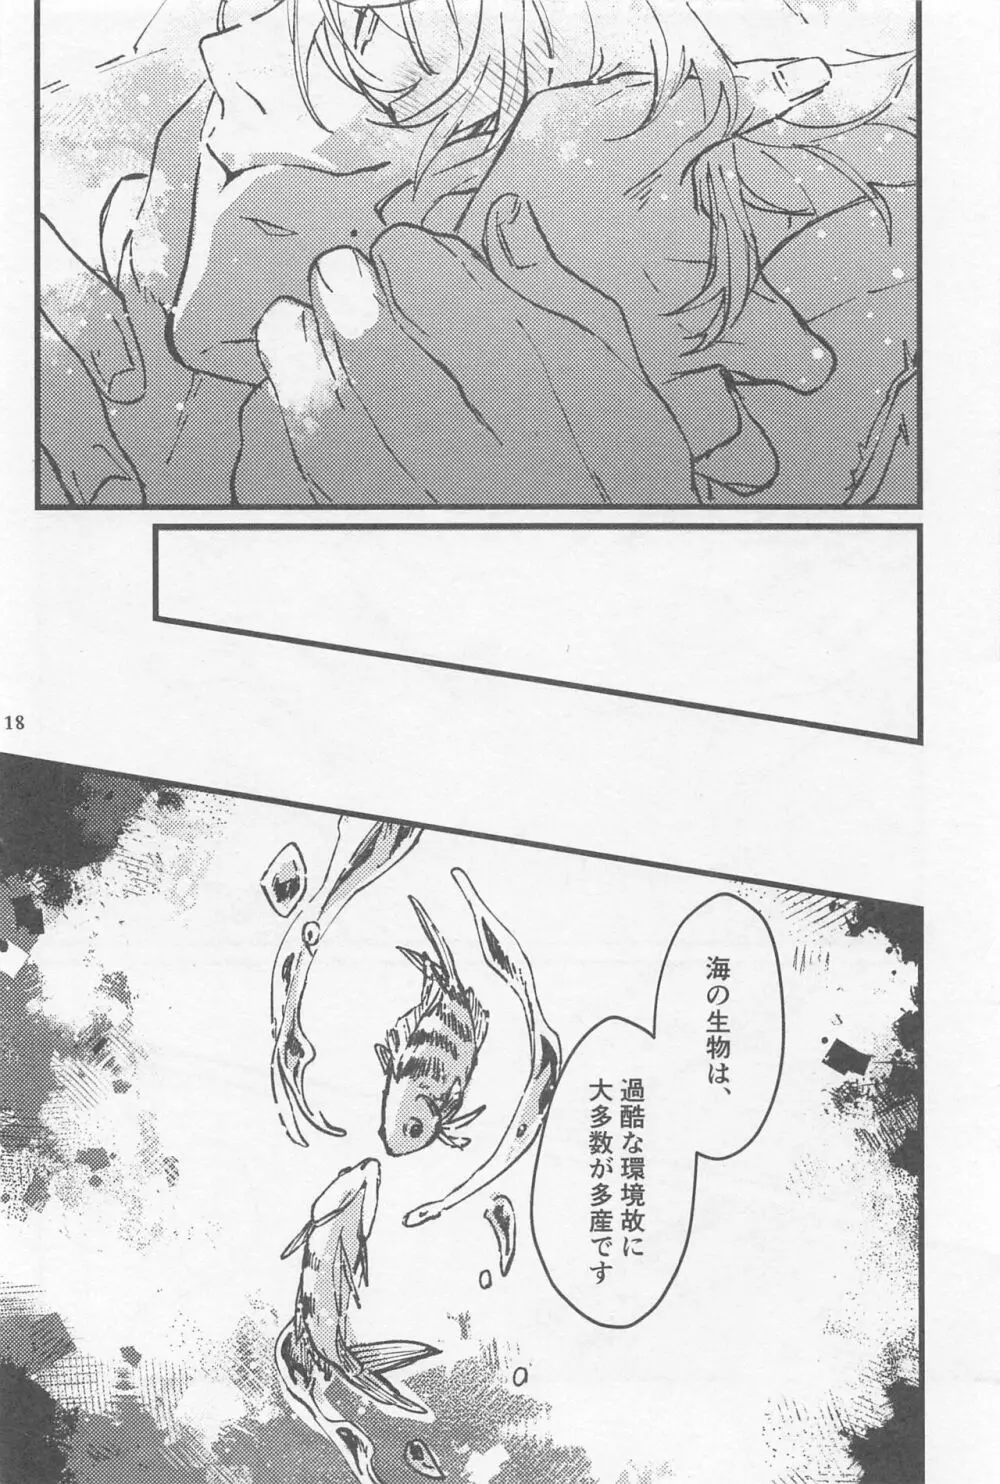 シンソウ夜話 #2 - page17